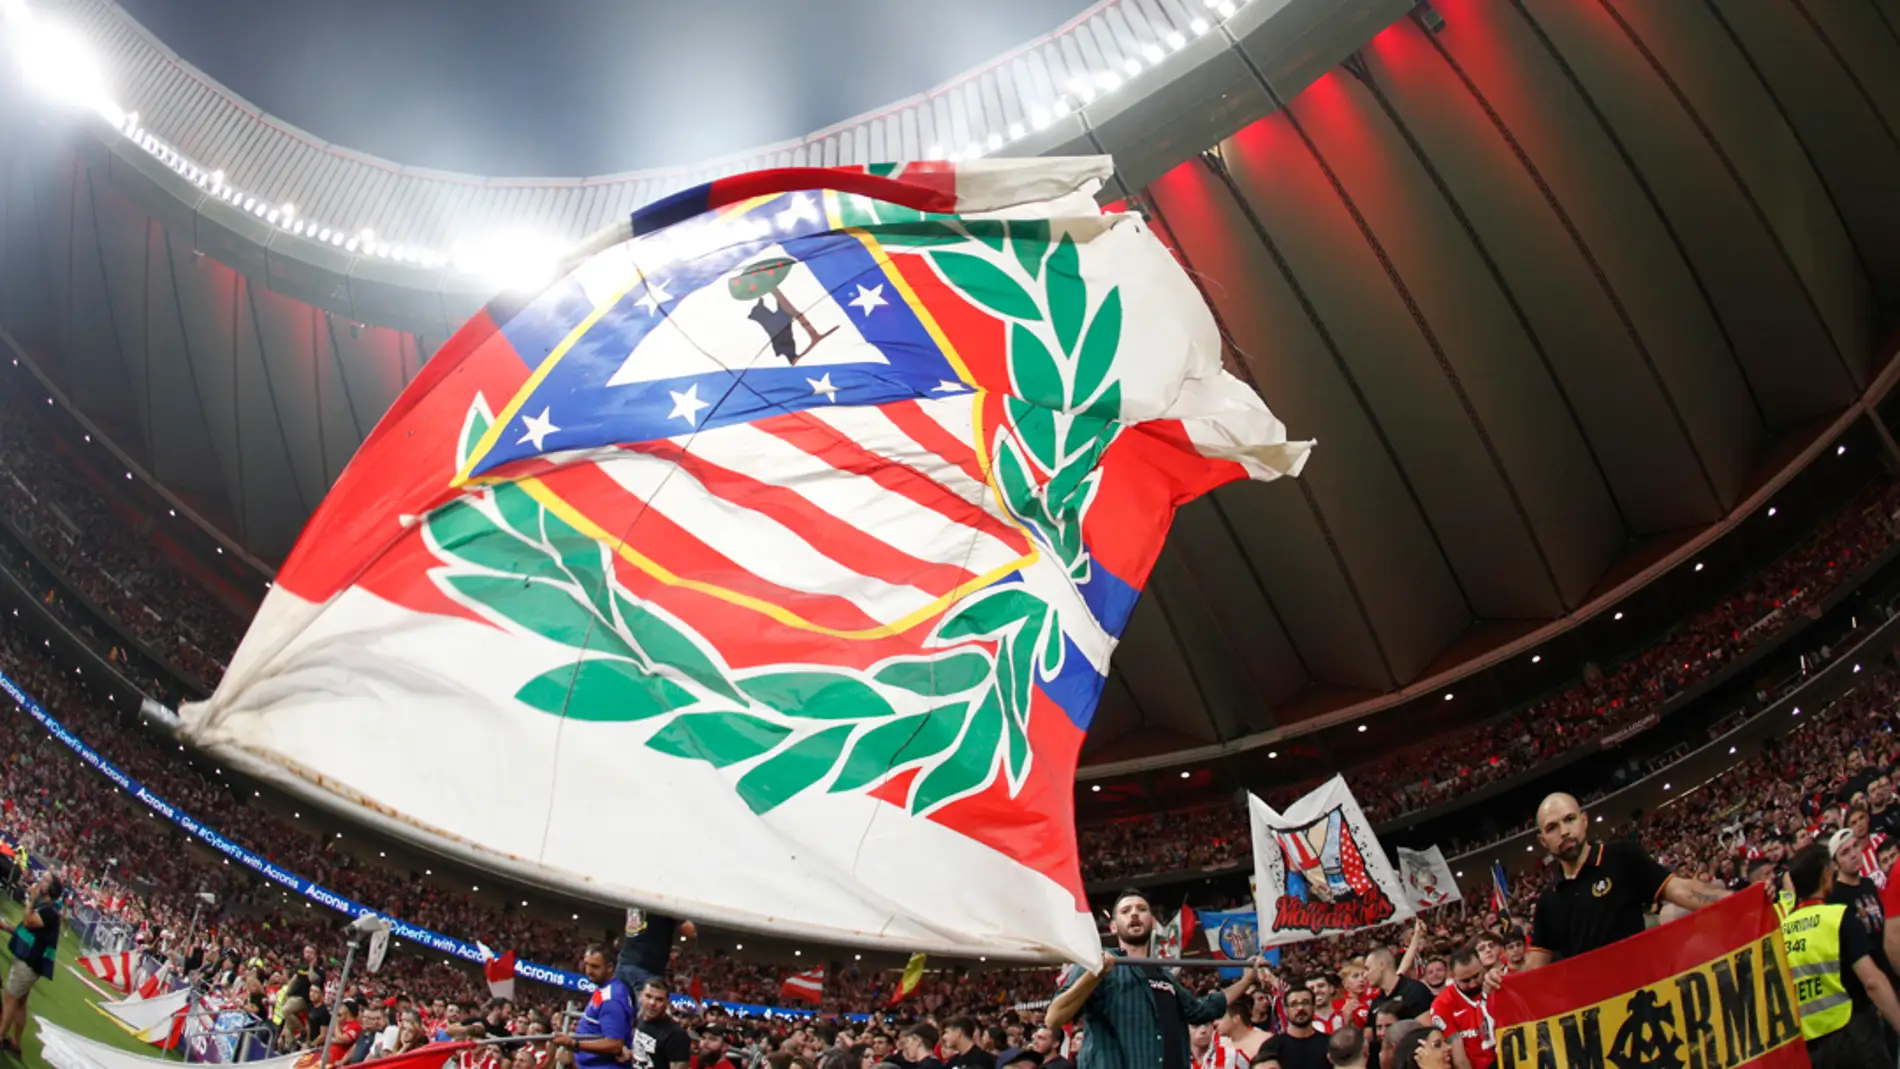 El Atlético de Madrid someterá a votación volver al escudo anterior